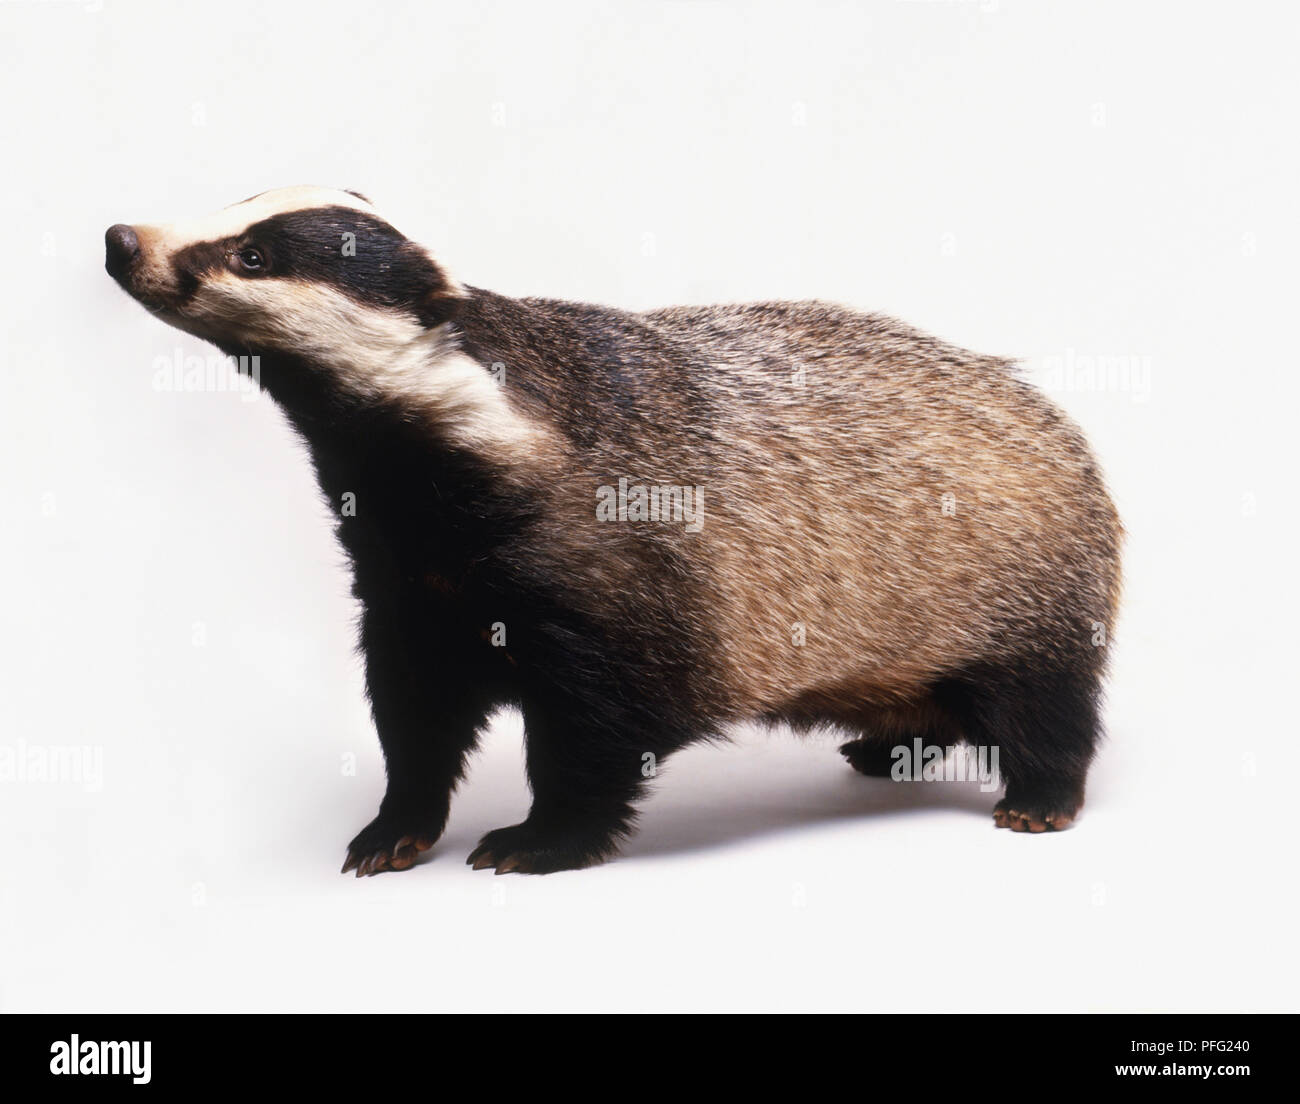 Meles meles (Old world badger, Eurasian badger). Family Mustelidae. Badger viewed from the side. Stock Photo